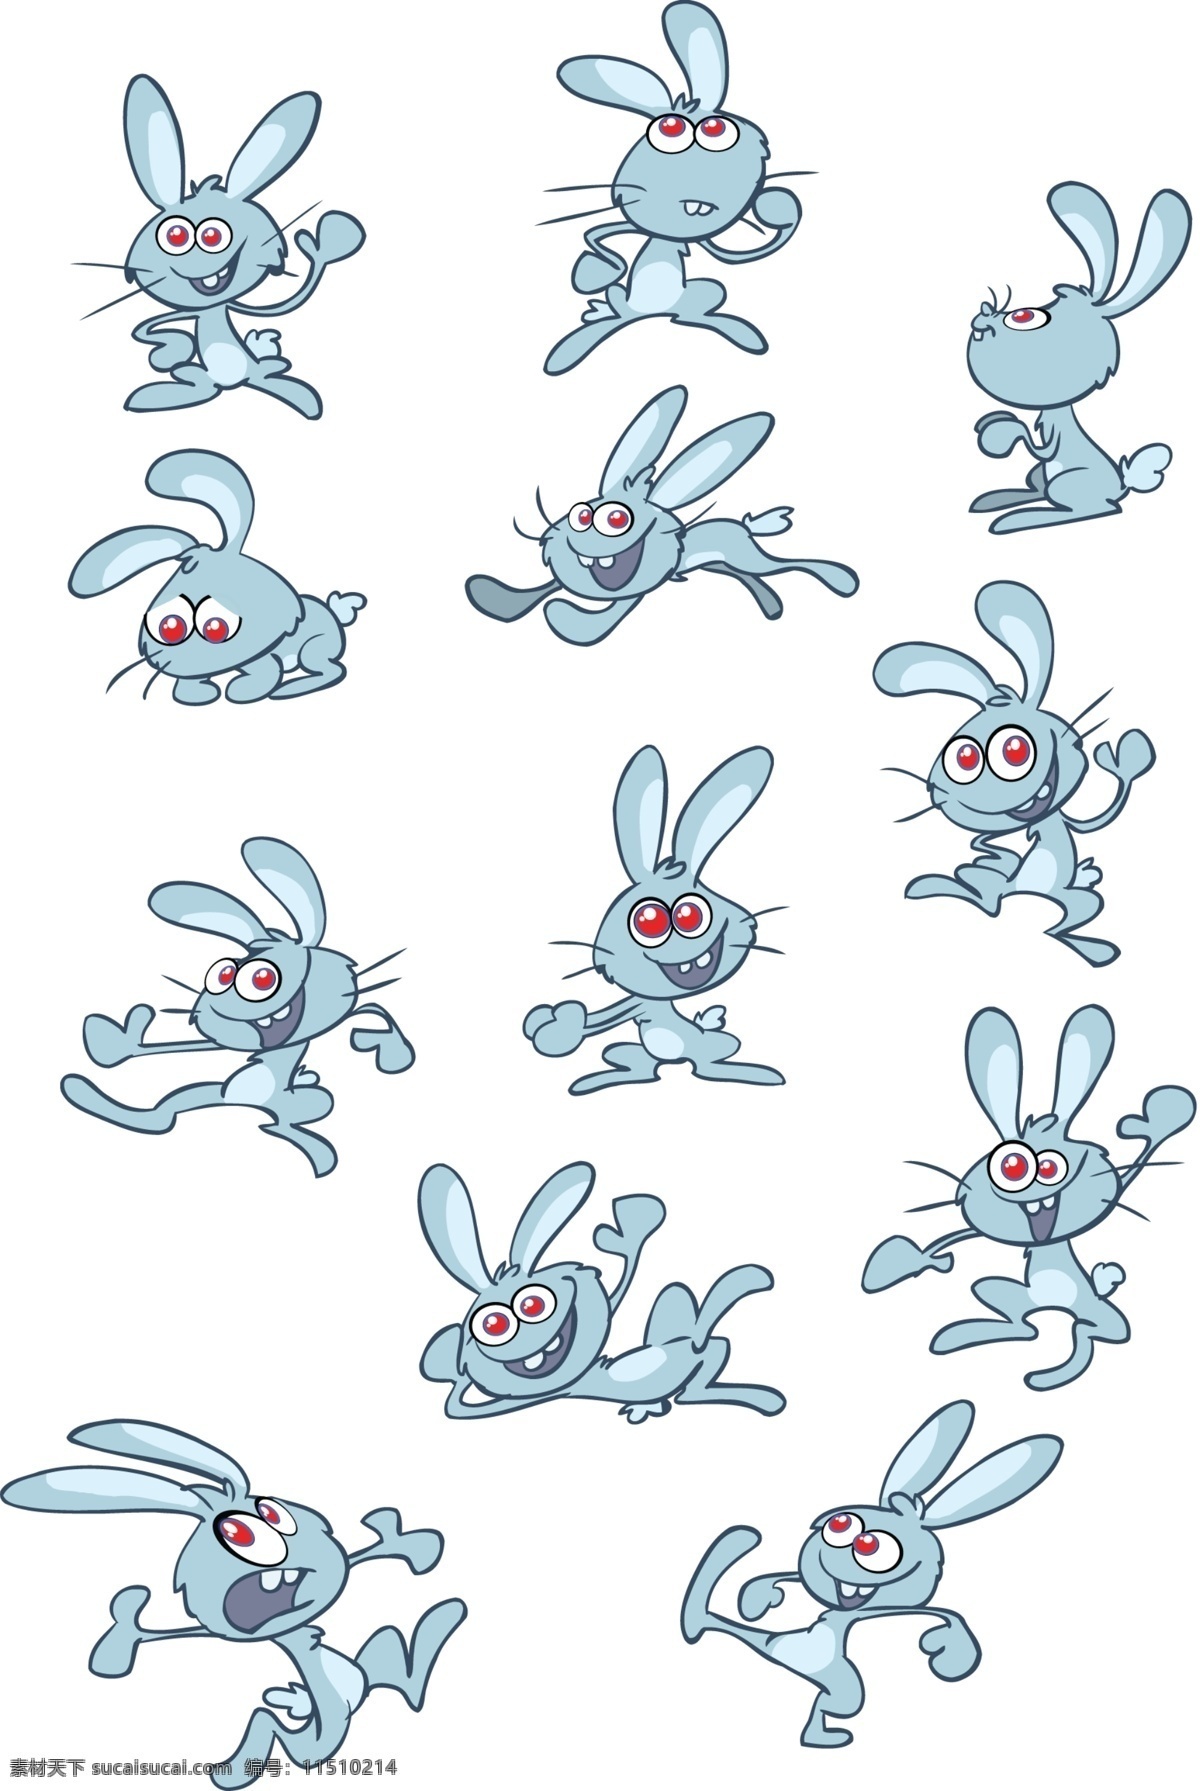 卡通 红眼 兔 矢量图 可爱兔子 卡通红眼兔 兔子形象 红眼睛兔子 其他矢量图